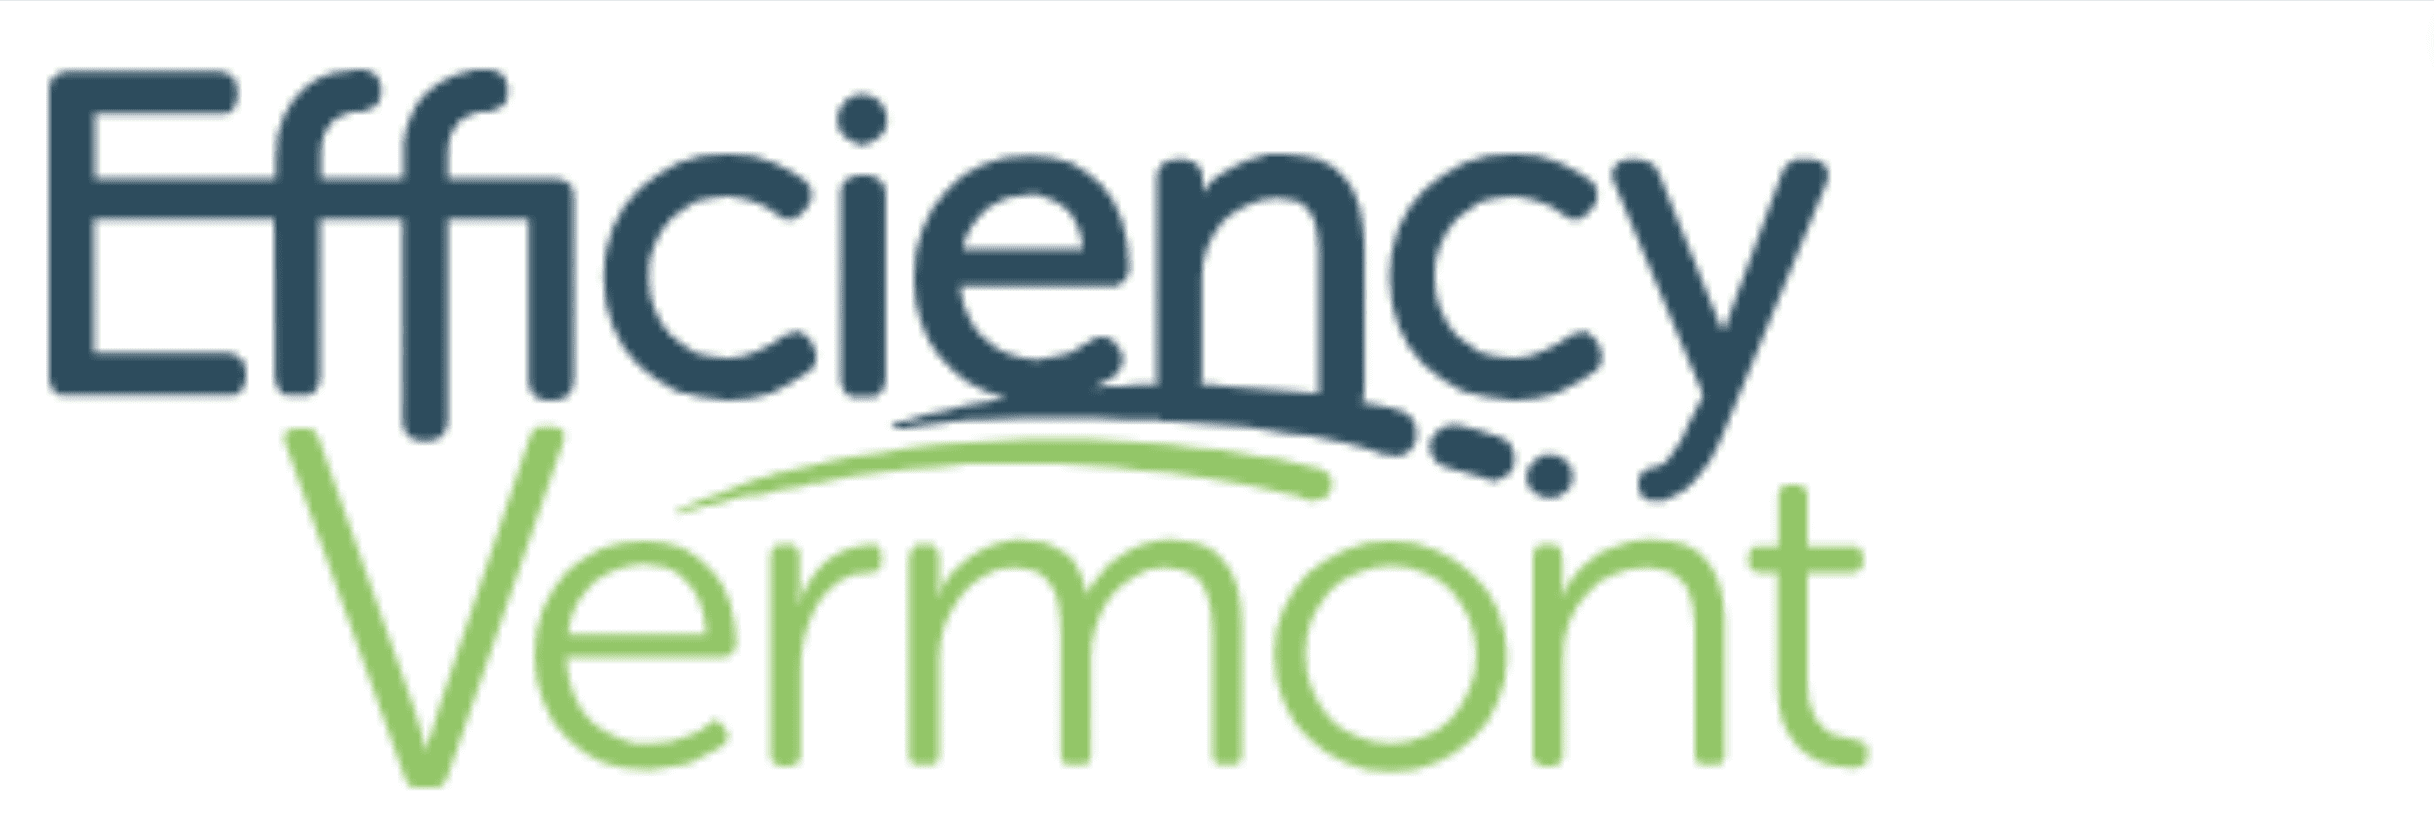 Efficiency Vermont logo